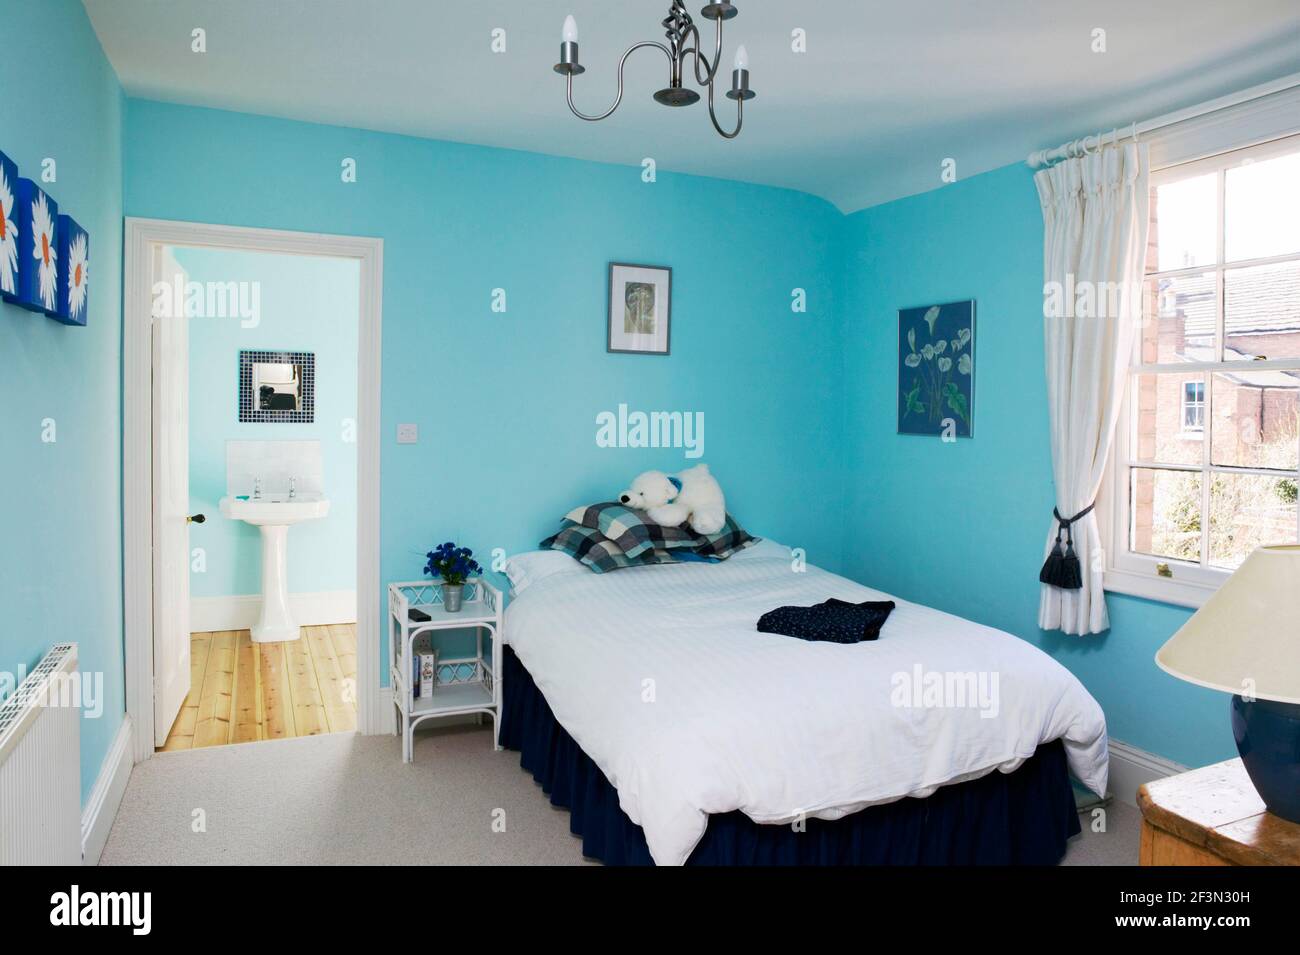 Un moderno dormitorio con paredes azules brillantes, cama, cortinas blancas y baño en-suite Foto de stock